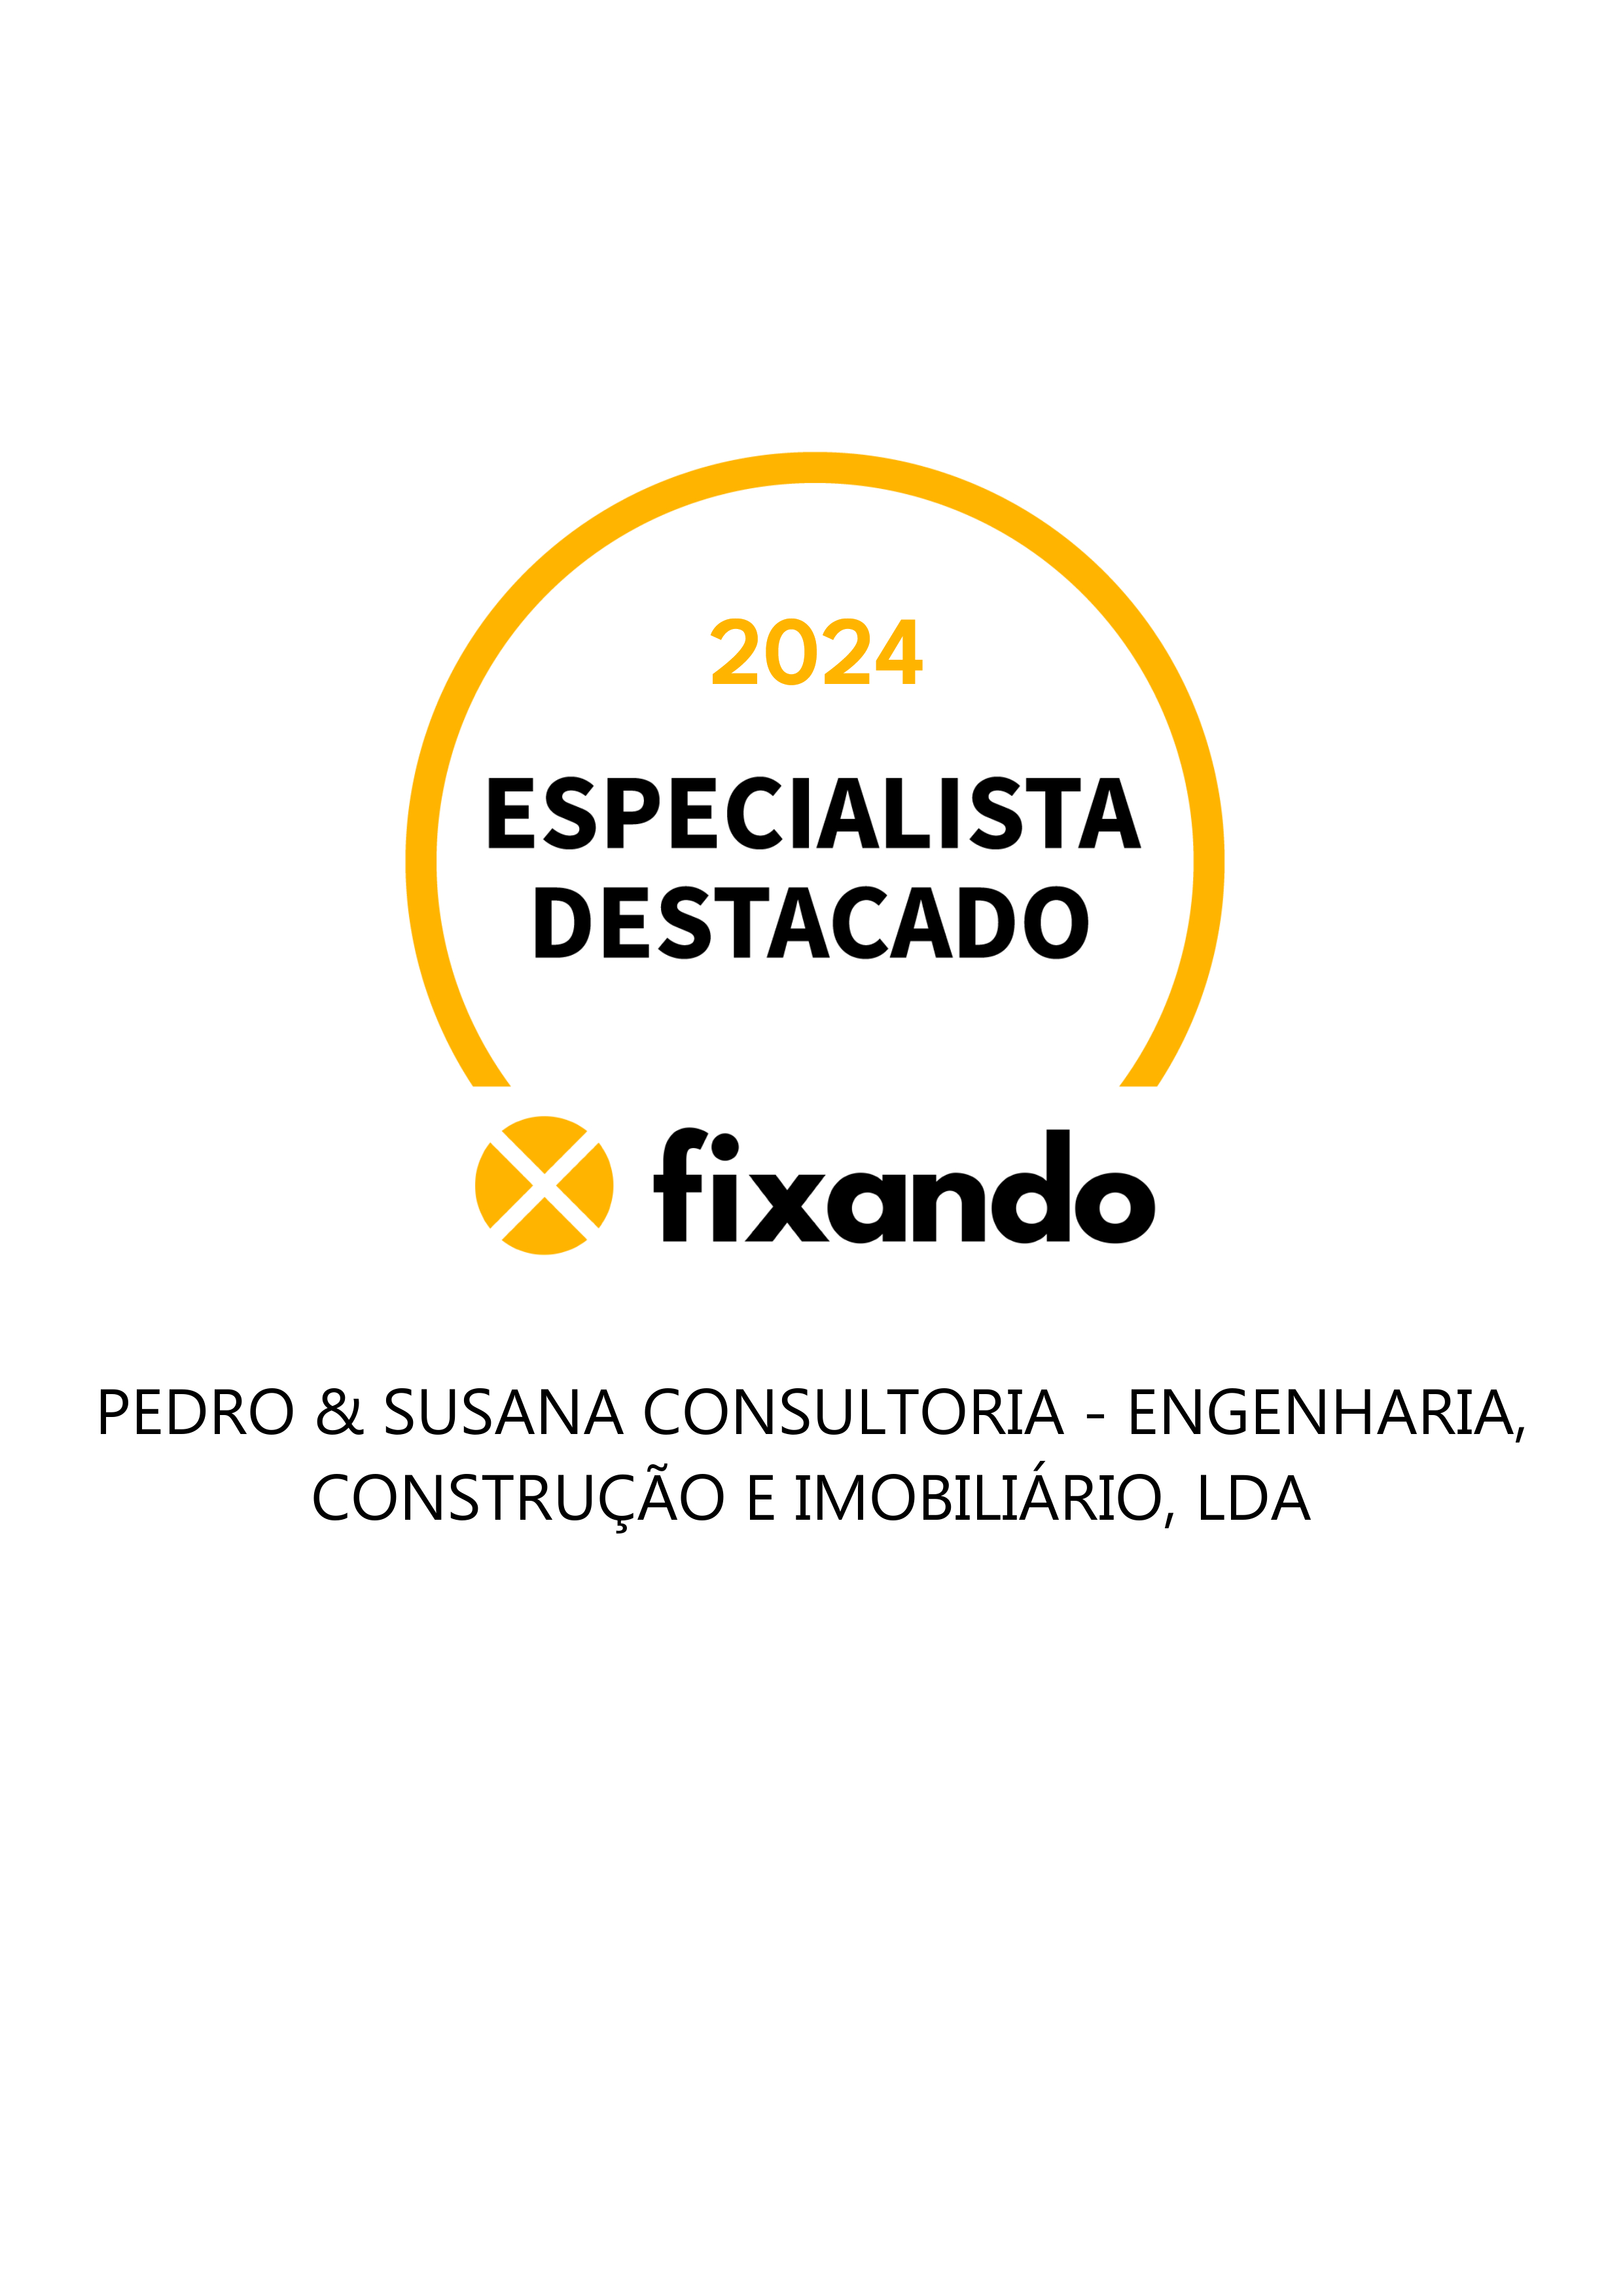 Pedro & Susana Consultoria - Engenharia, Construção e Imobiliário, Lda - Gondomar - Auditoria Energética